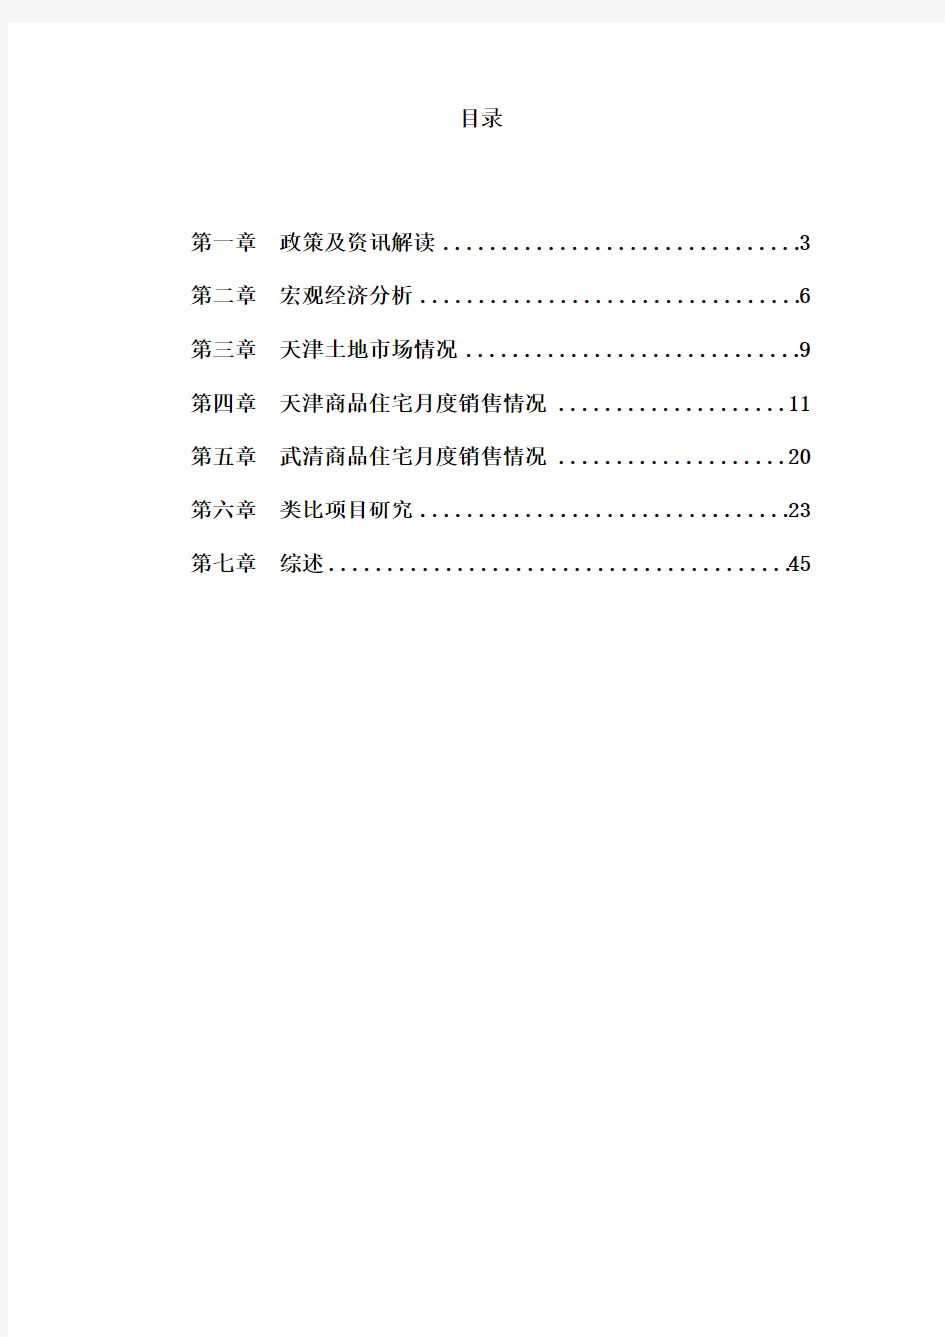 2015天津房地产市场月度观察报告_45页,分析报告,市场调查